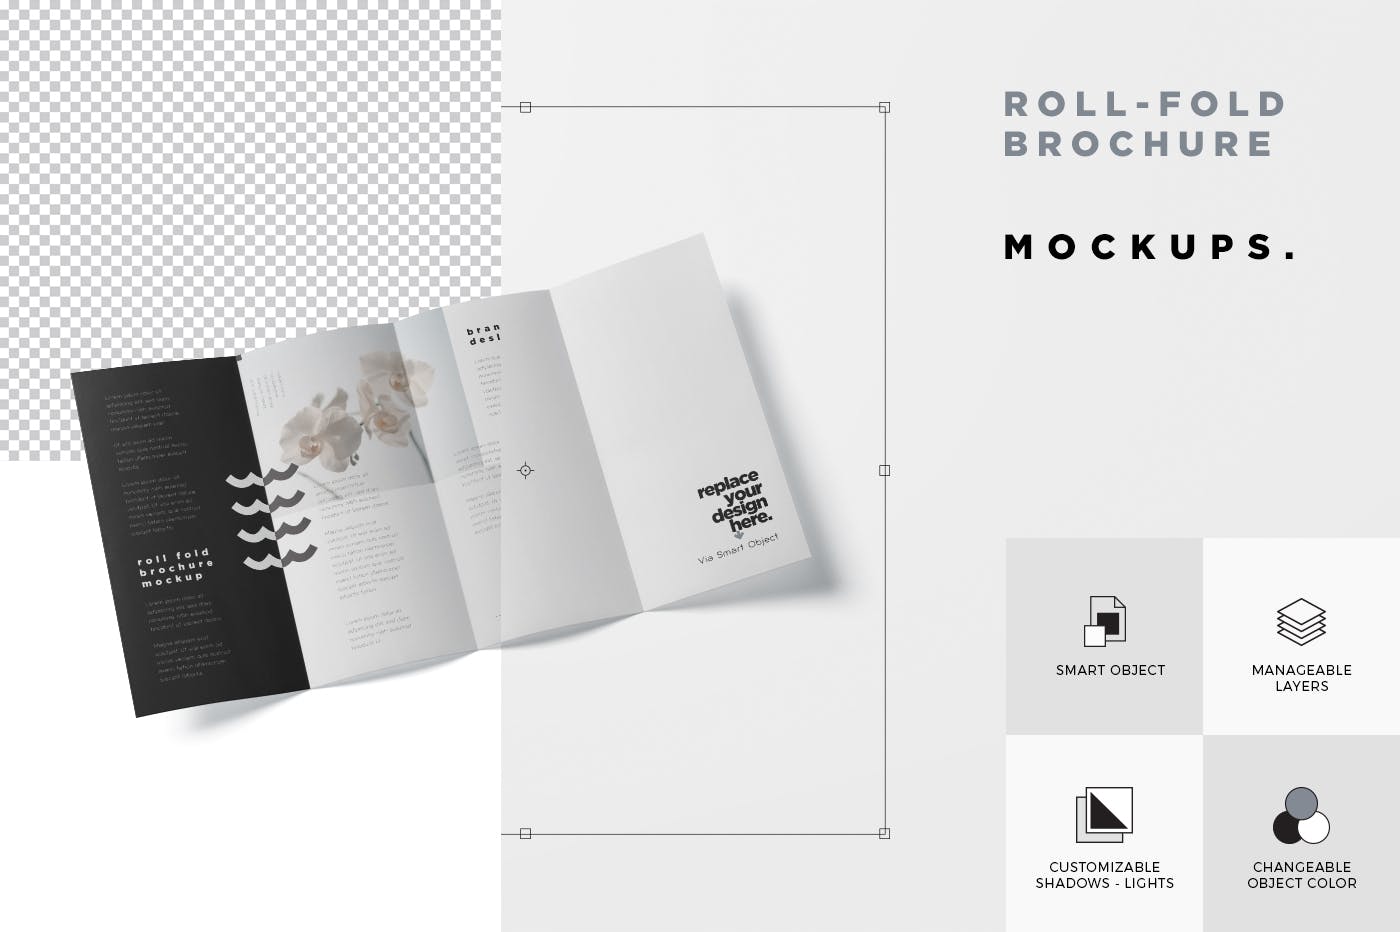 折叠设计风格企业传单/宣传册设计样机素材库精选 Roll-Fold Brochure Mockup – DL DIN Lang Size插图(6)